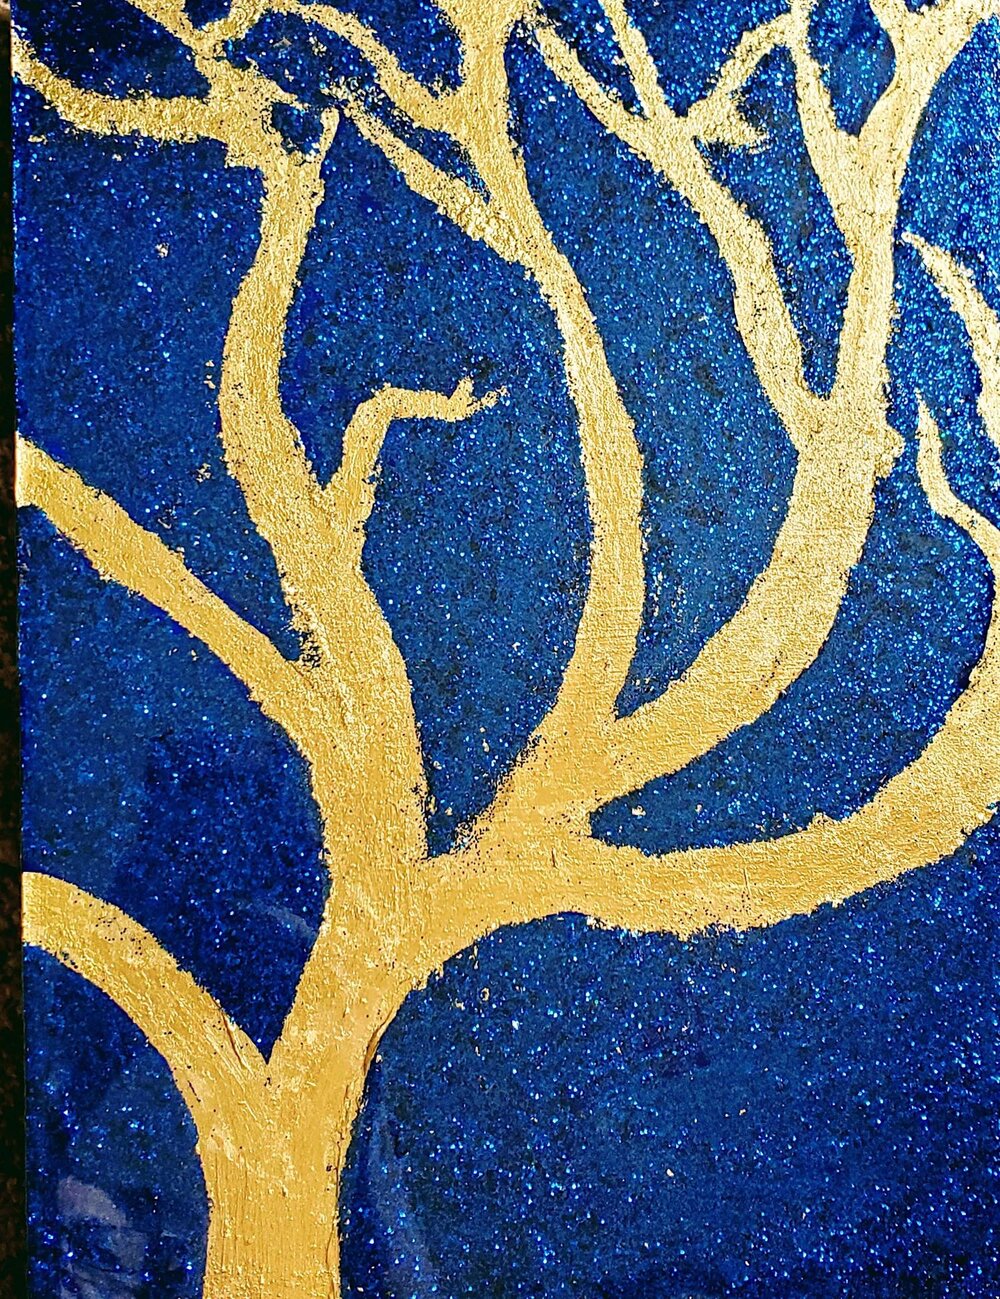 Study of Golden Trees, Cobalt